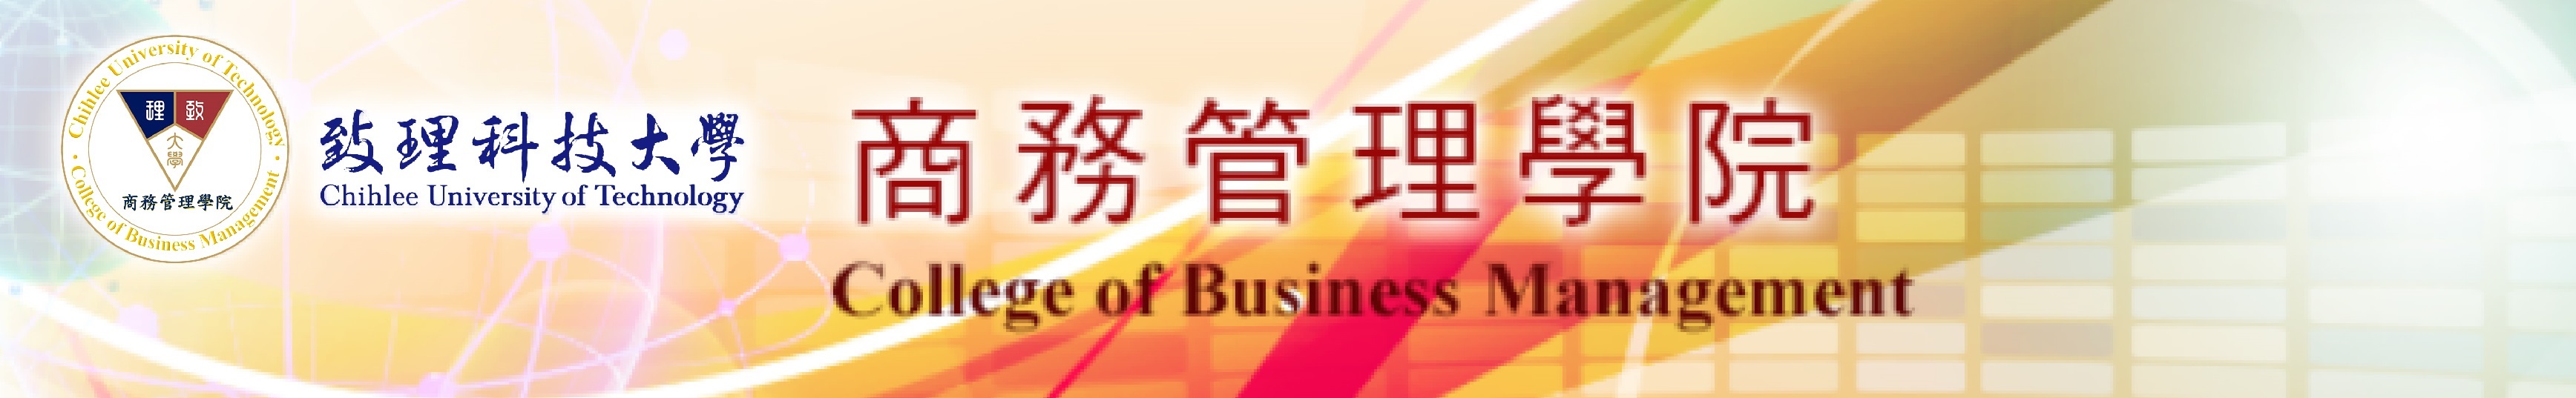 商務管理學院手機版logo